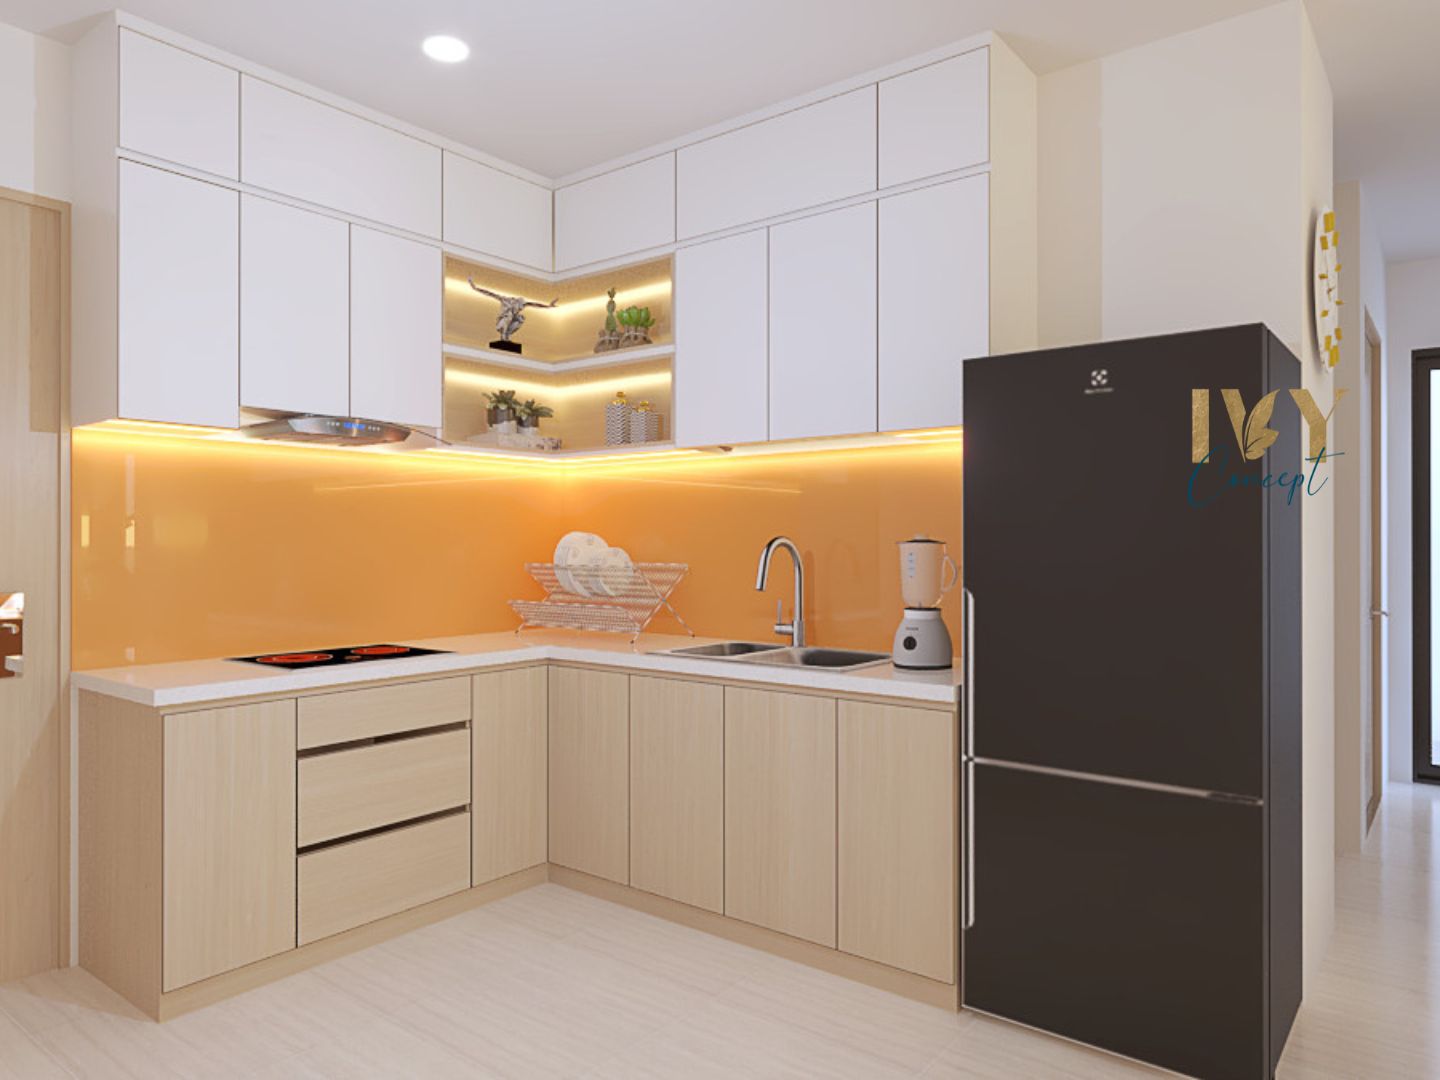 Phòng bếp, phong cách Hiện đại Modern, thiết kế concept nội thất, căn hộ Vinhomes Grand Park